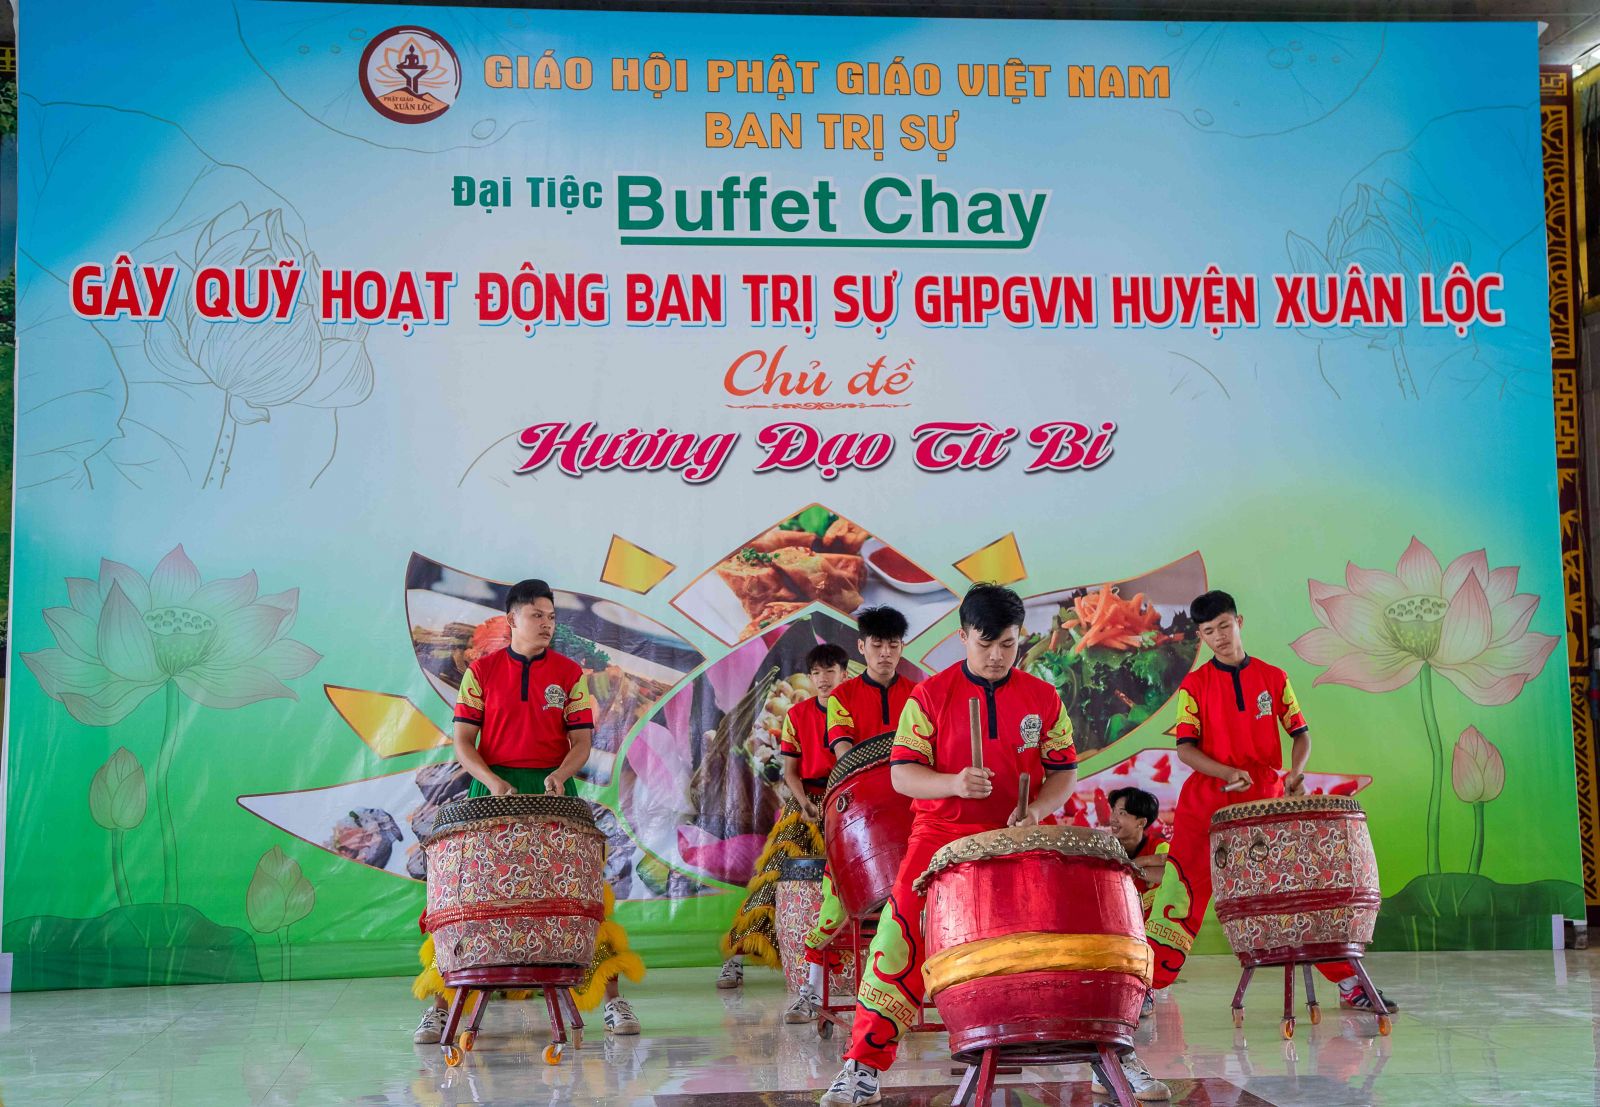 Xuân Lộc: Ban Trị sự GHPGVN huyện Xuân Lộc tổ chức Đại tiệc Buffet chay gây quỹ